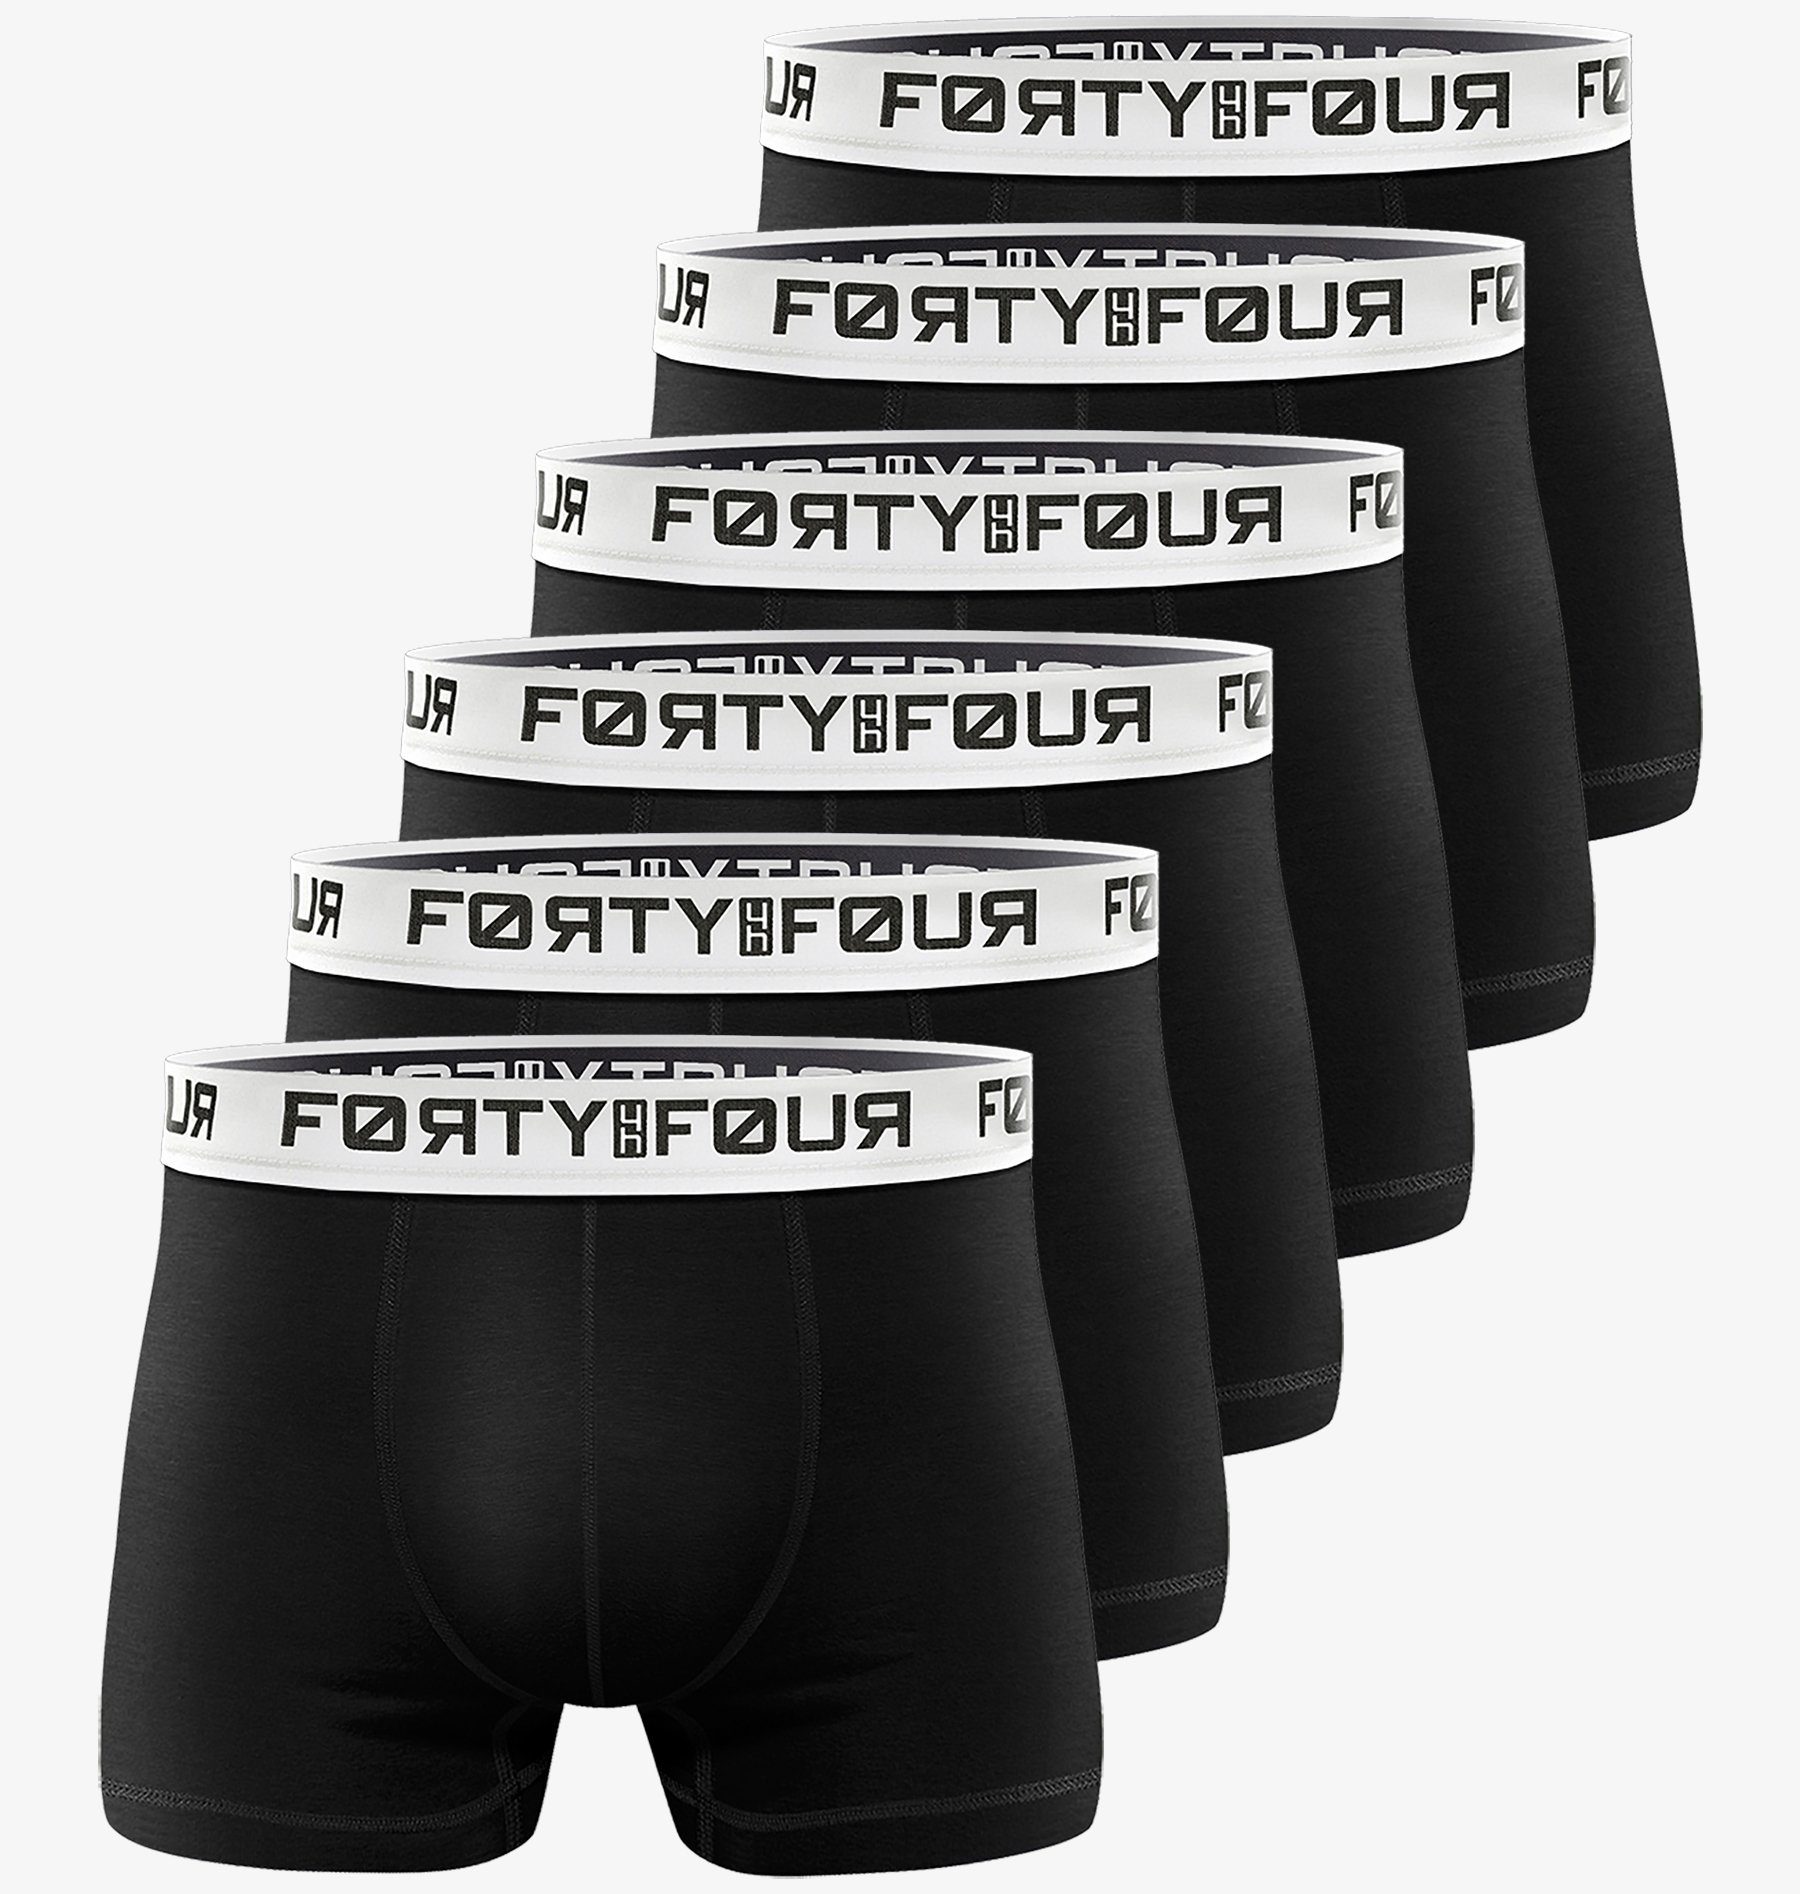 FortyFour Boxershorts Herren Männer Unterhosen Baumwolle Premium Qualität perfekte Passform (Vorteilspack, 6er Pack) S - 7XL 706h-schwarz